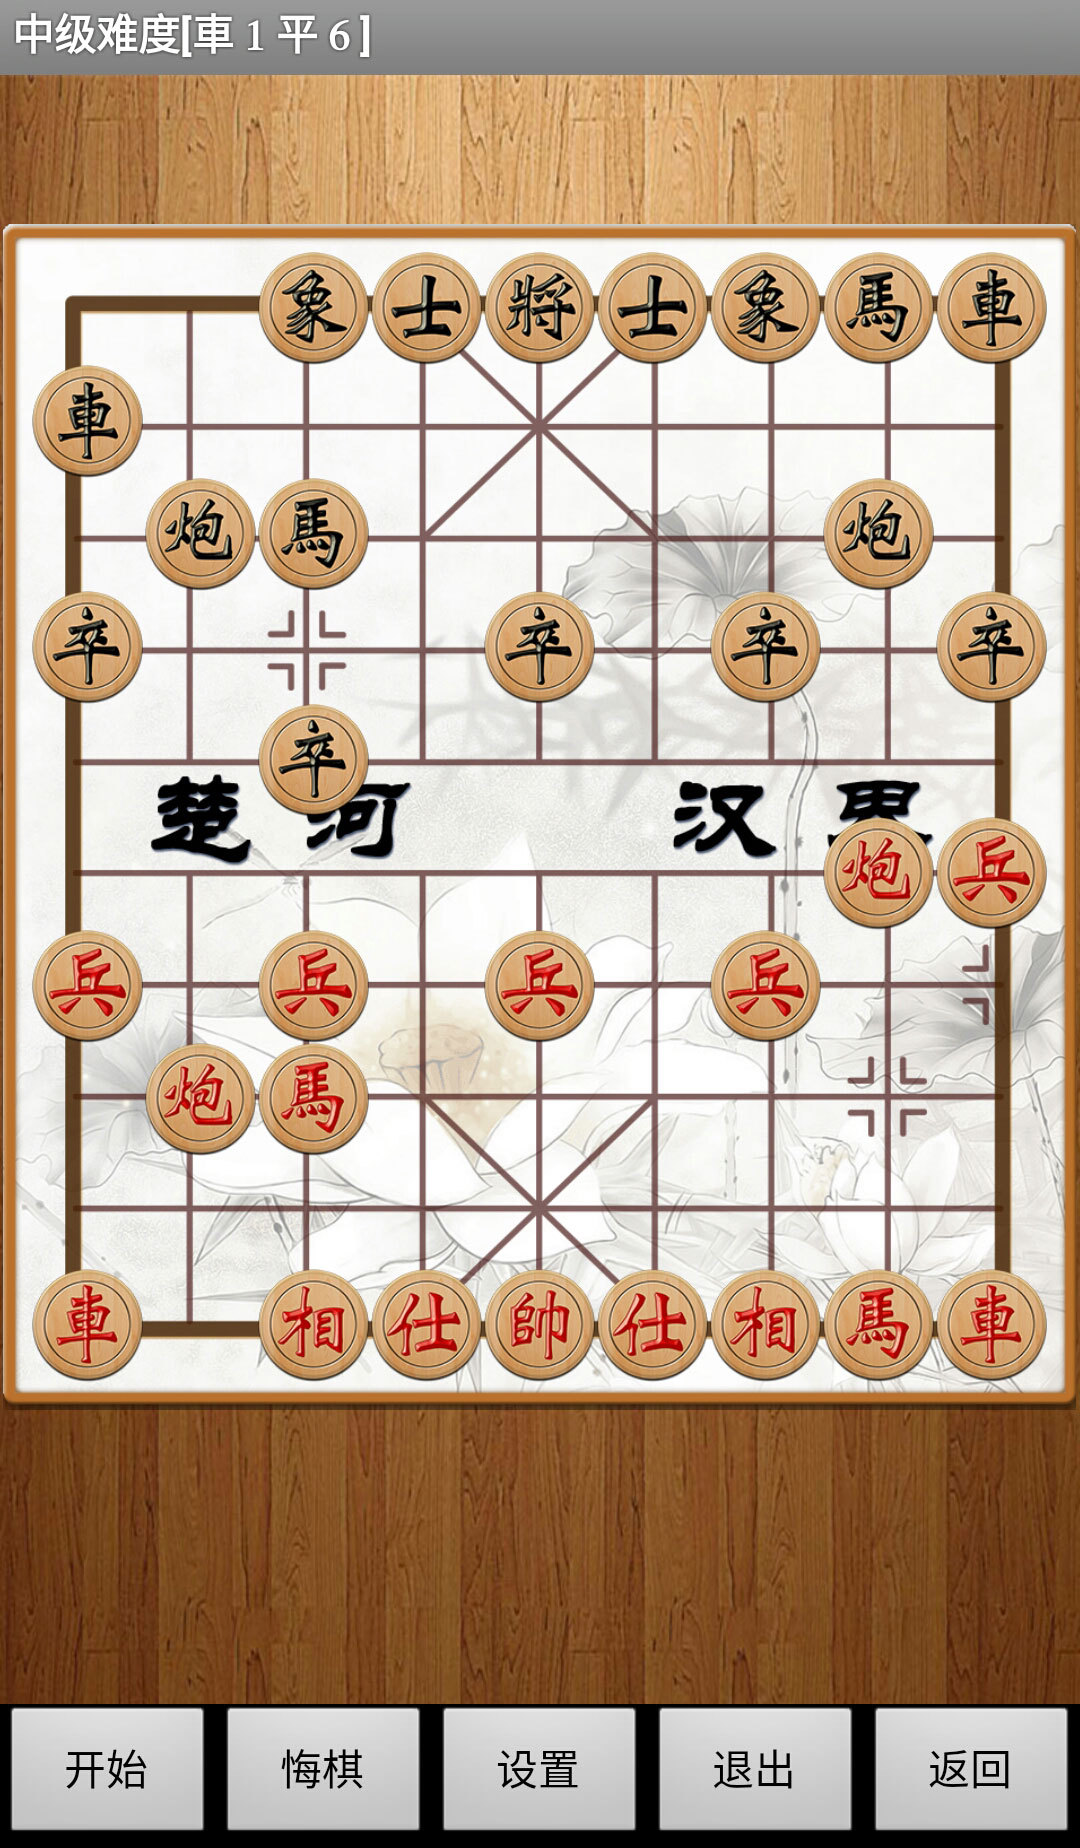 经典中国象棋APP V4.3.5 安卓版截图5